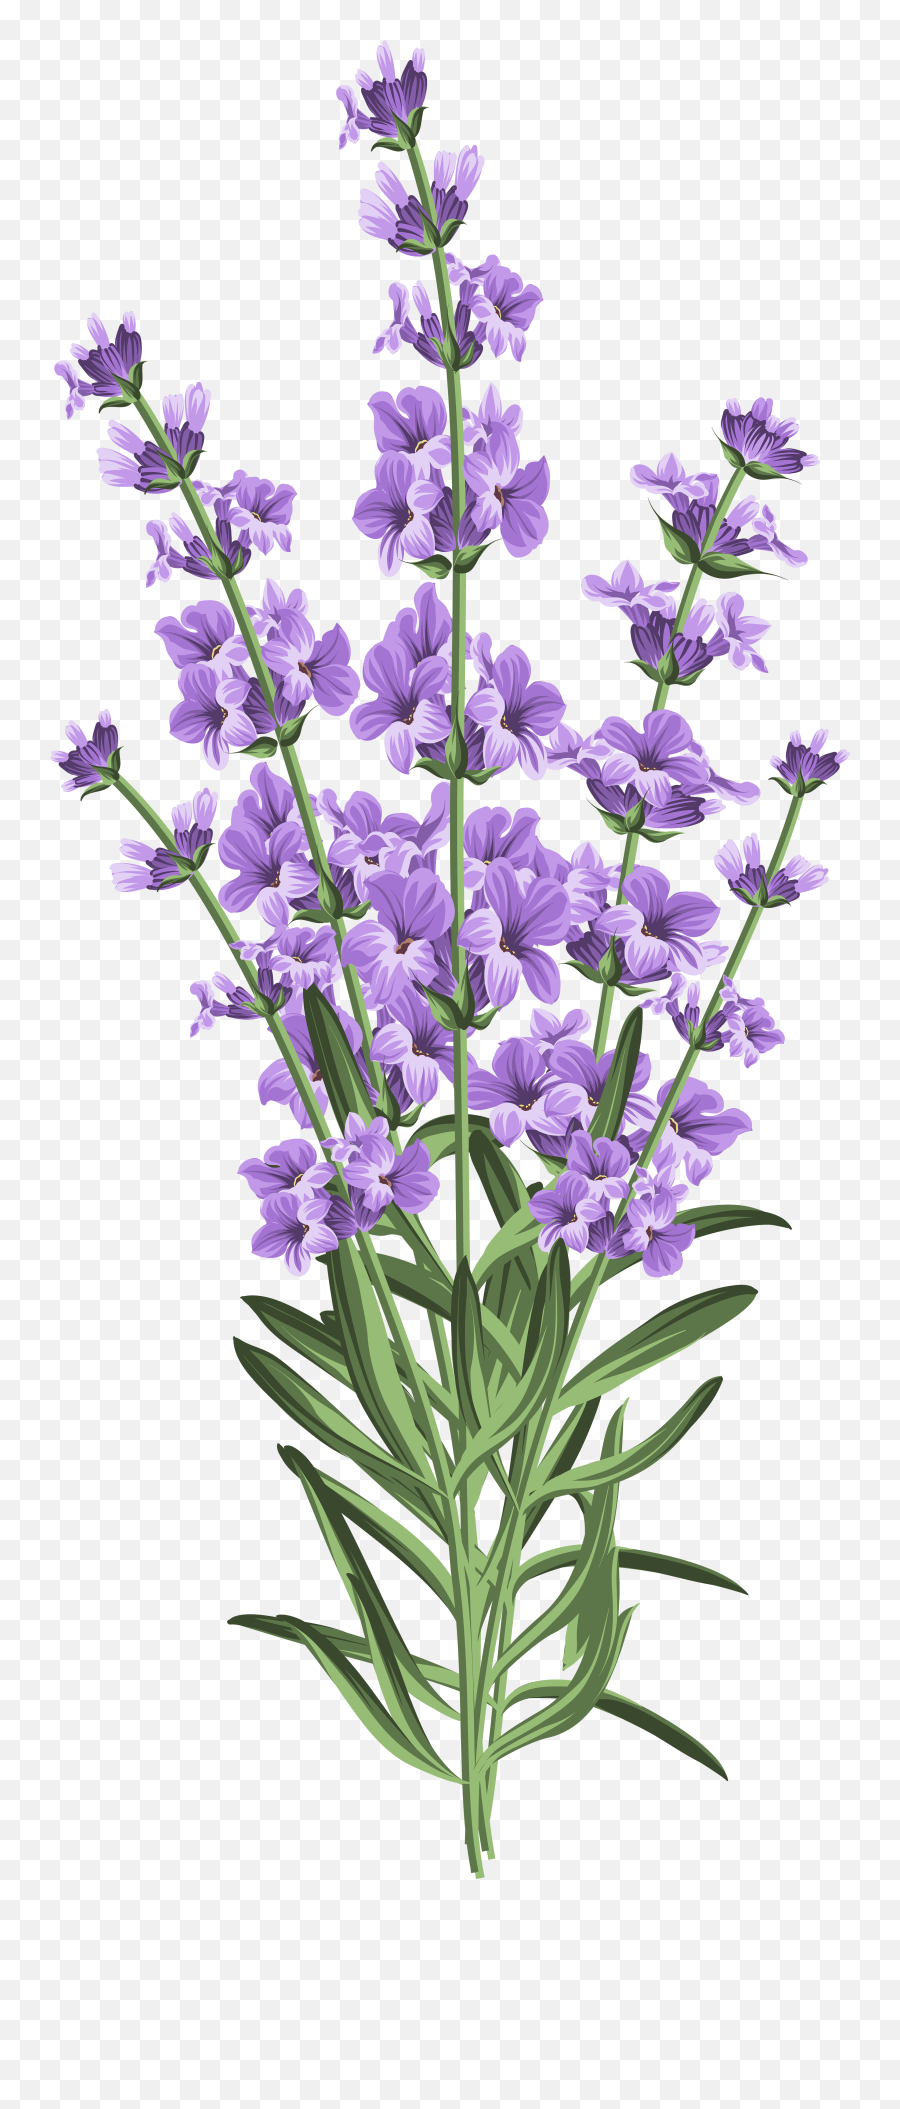 Lavender Flowers Png U0026 Free Flowerspng Transparent - Transparent Background Lavender Flower Png,Purple Flowers Png